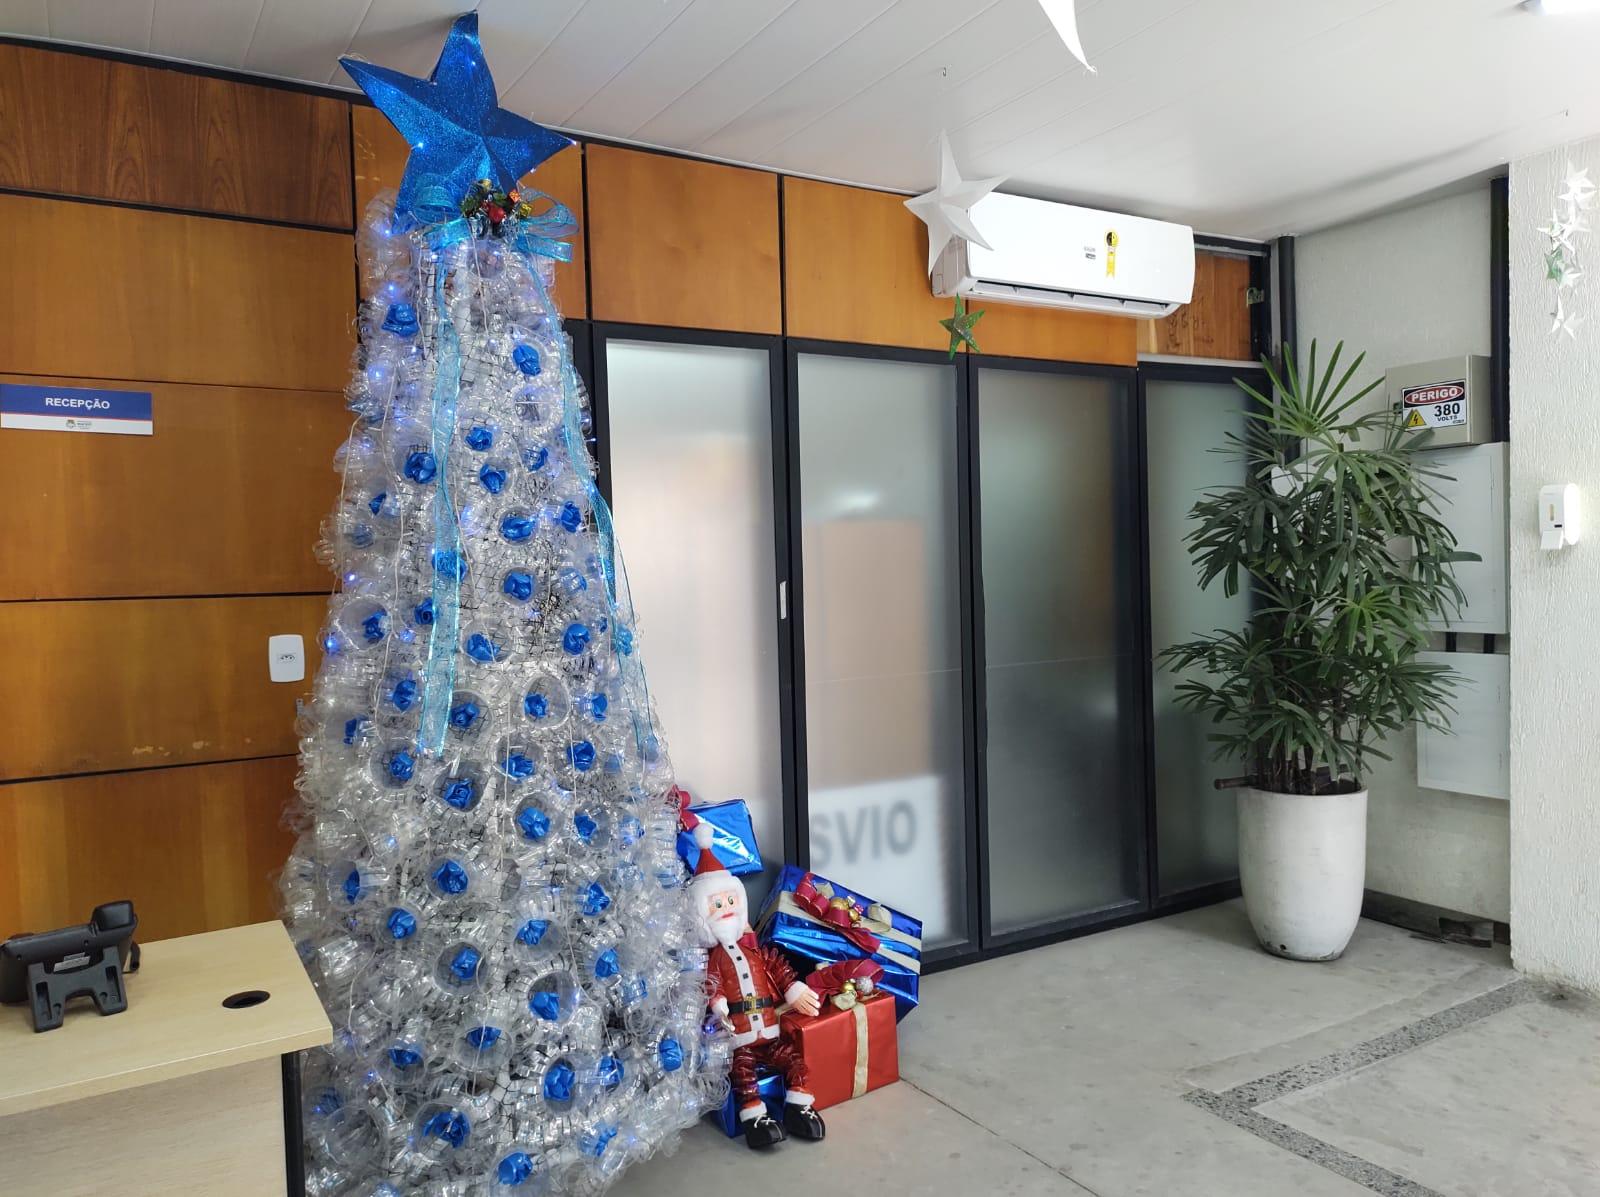 Decoração de Natal em prédios precisa de planejamento e segurança